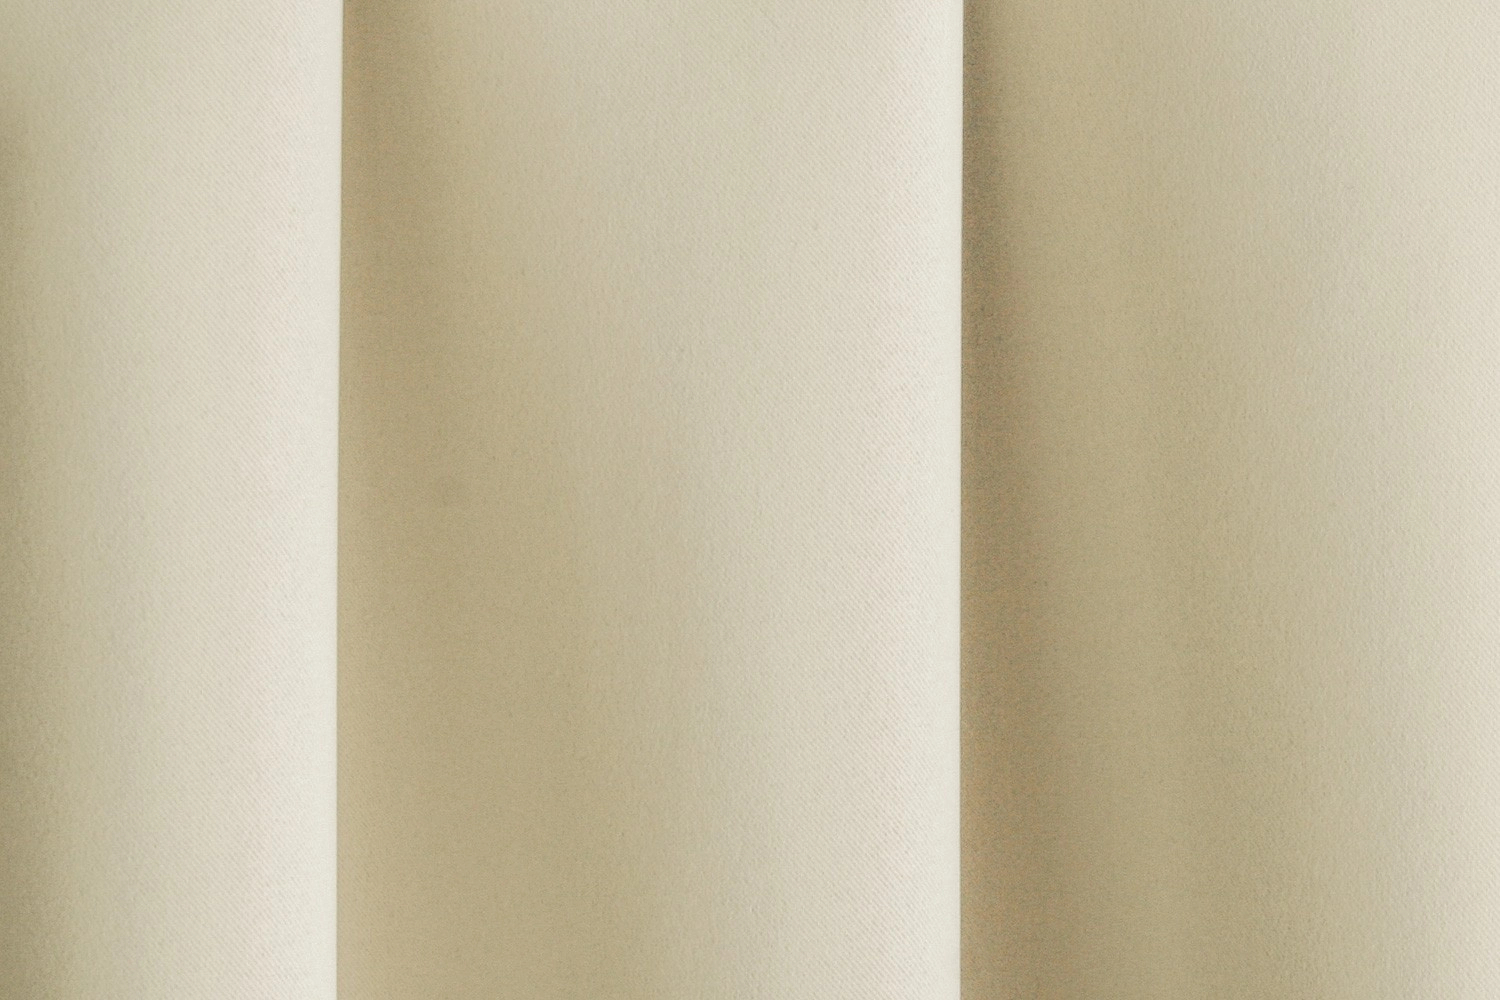 Fényes krém beige Denis sötétítő design függöny textil 5,2fm